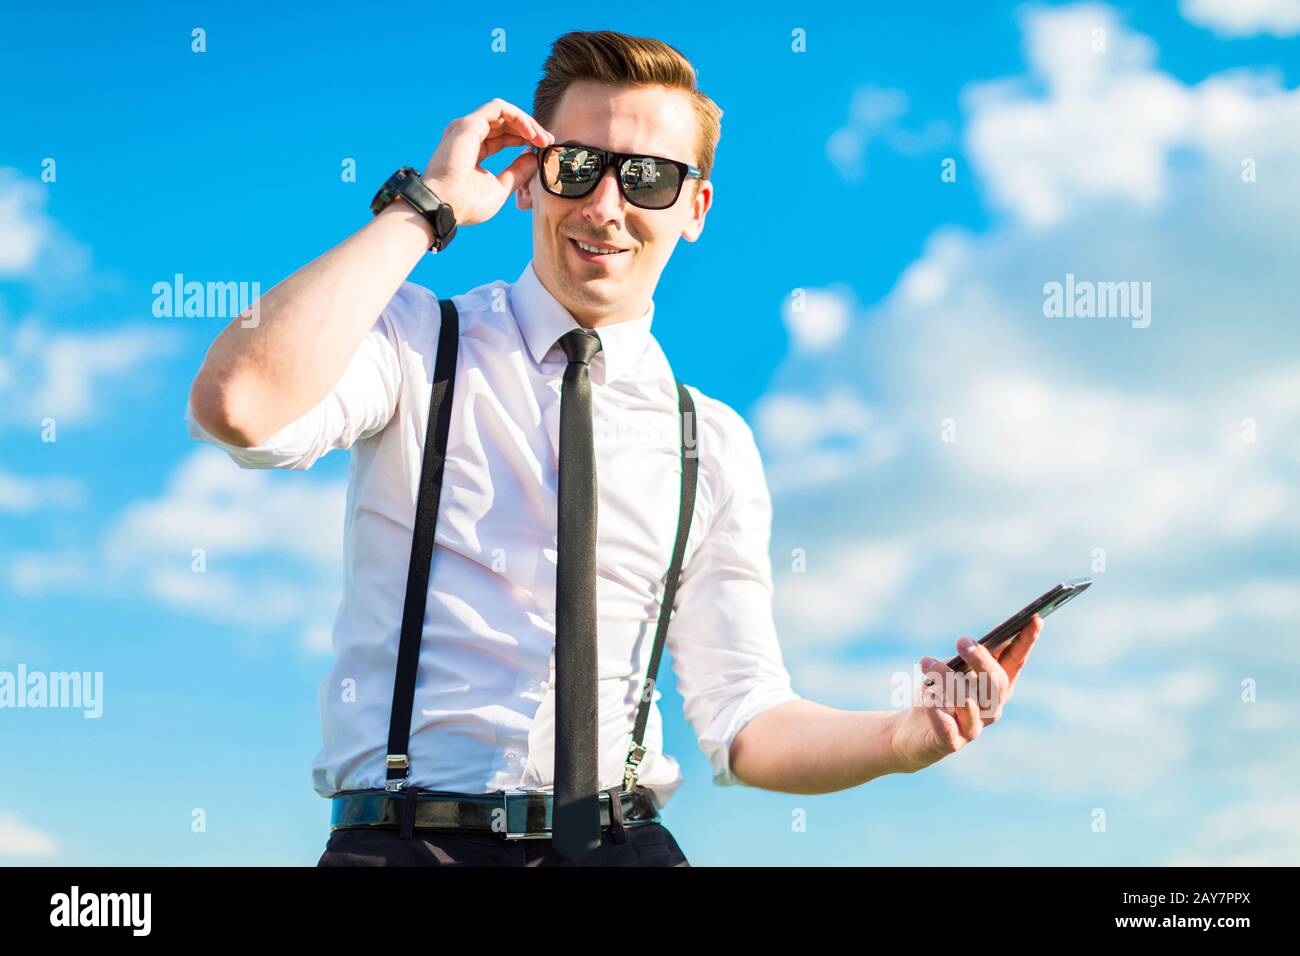 Joli butunessman en chemise blanche, cravate, bretelles et lunettes de soleil Banque D'Images